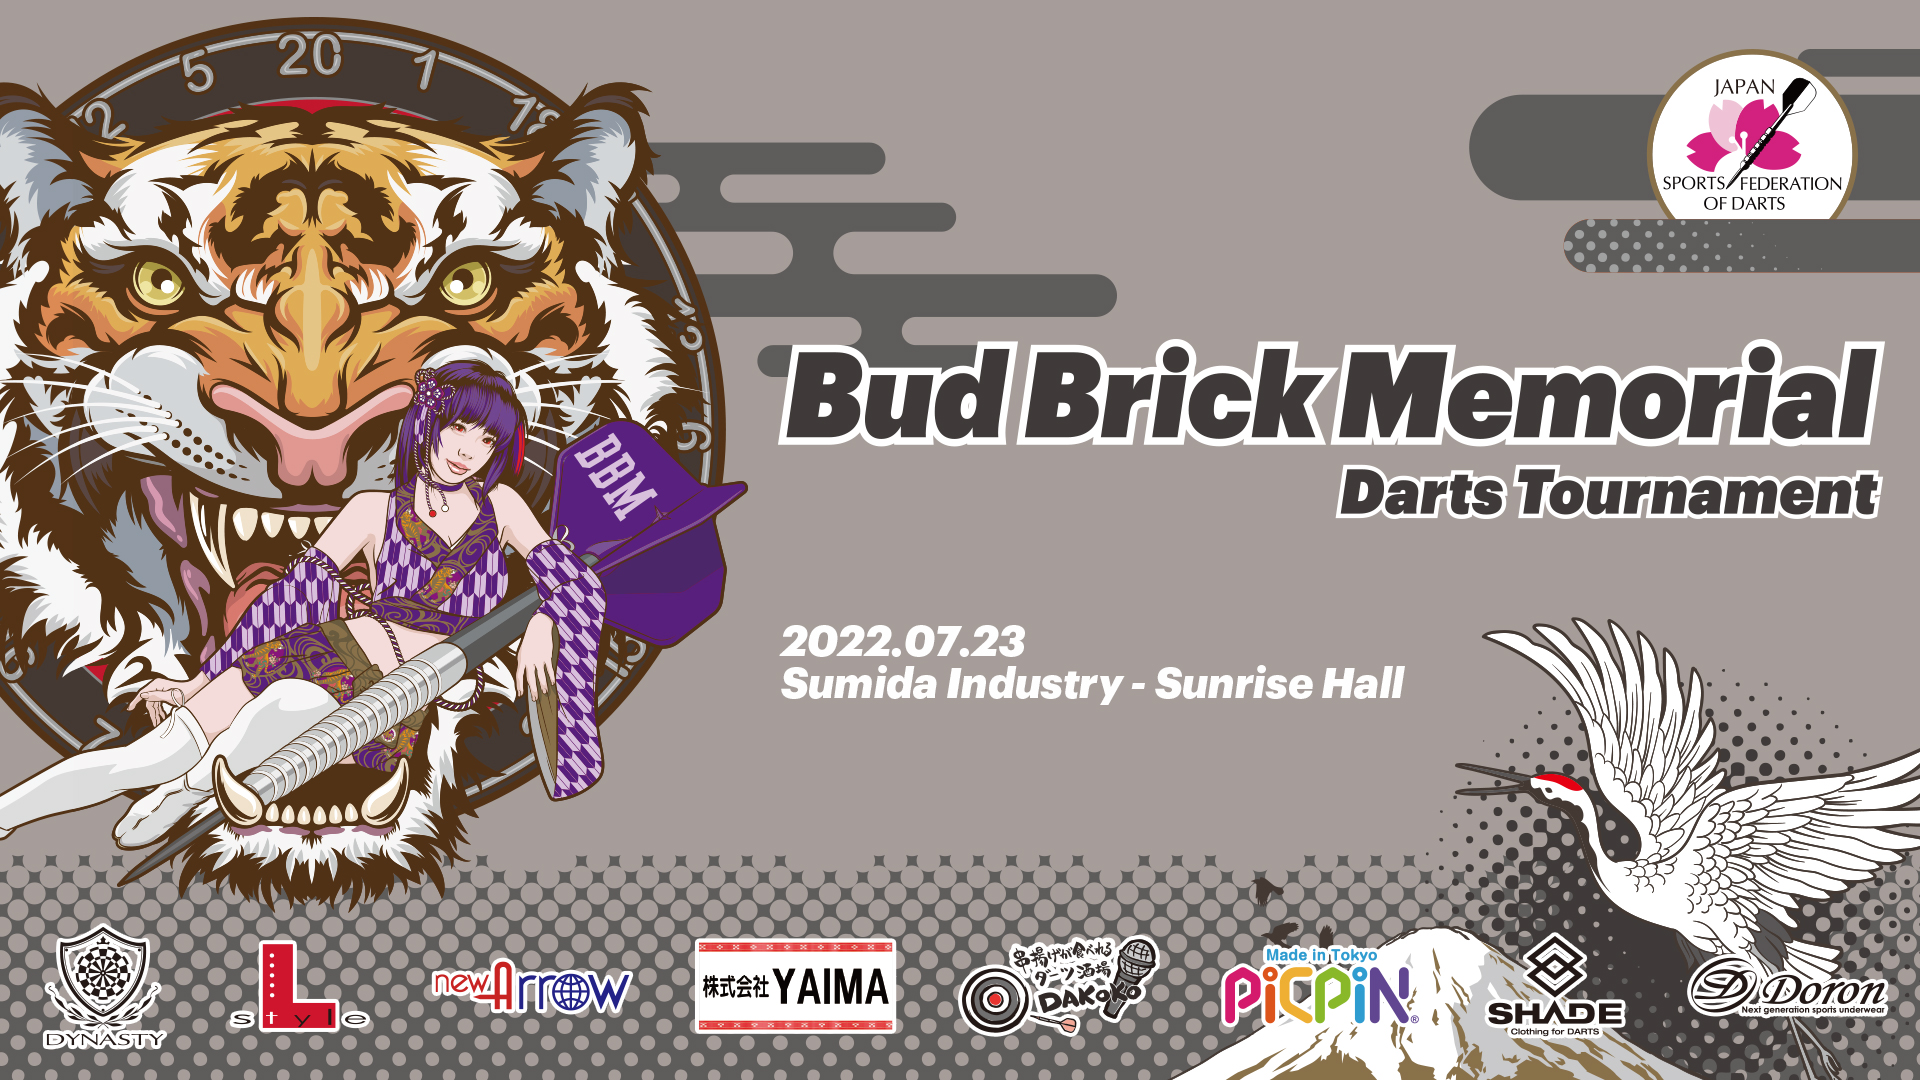 2022.07.23 Bud Brick Memorial Darts Tournament